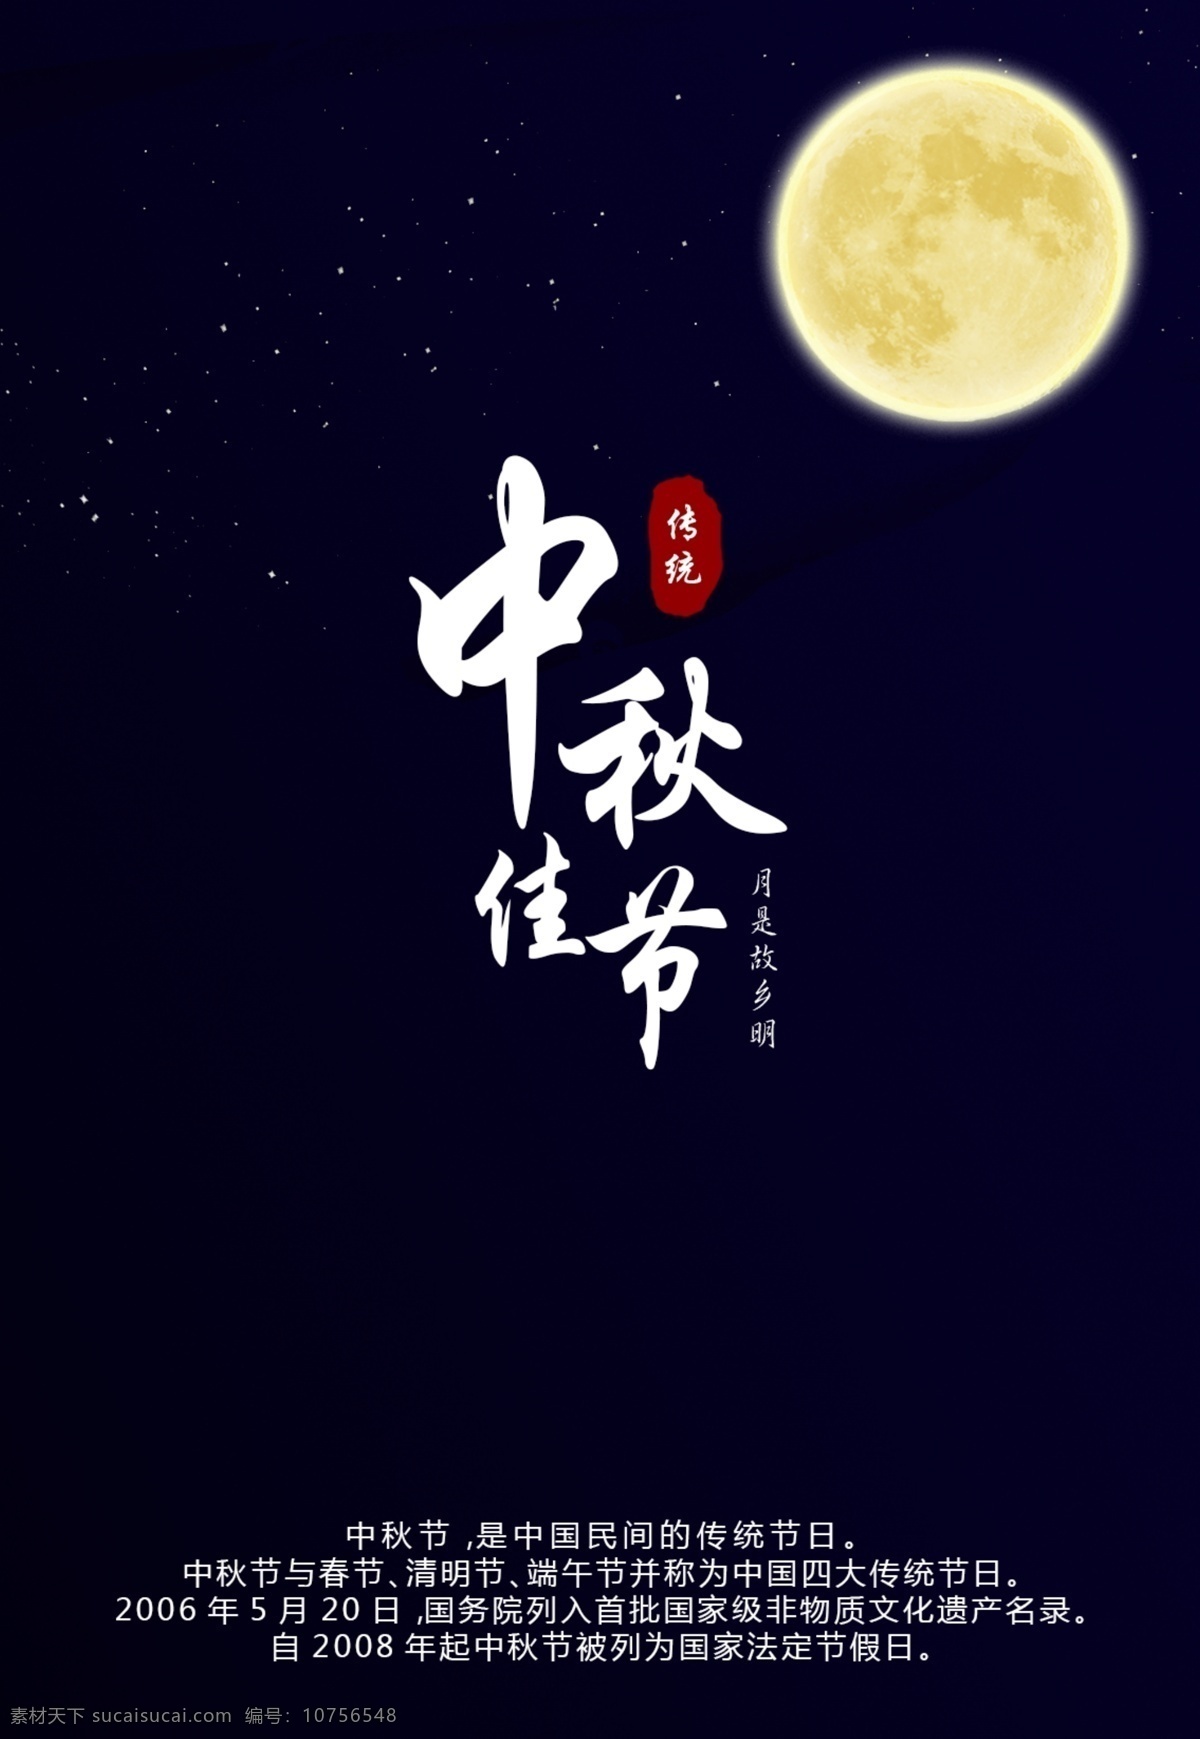 中秋佳节 中秋 月亮 明月 故乡 中秋节 传统 星光 夜晚